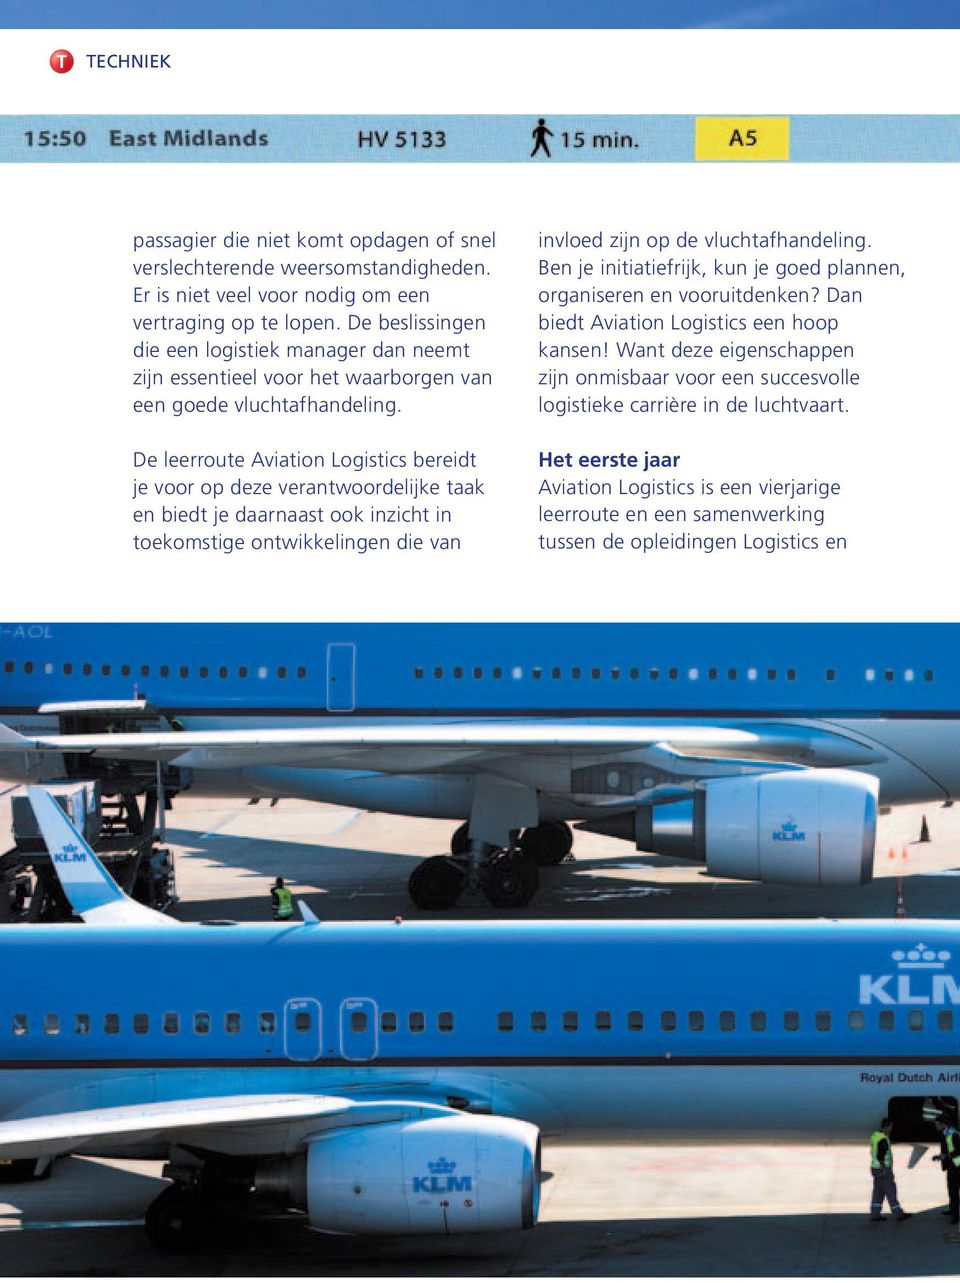 De leerroute Aviation Logistics bereidt je voor op deze verantwoordelijke taak en biedt je daarnaast ook inzicht in toekomstige ontwikkelingen die van invloed zijn op de vluchtafhandeling.